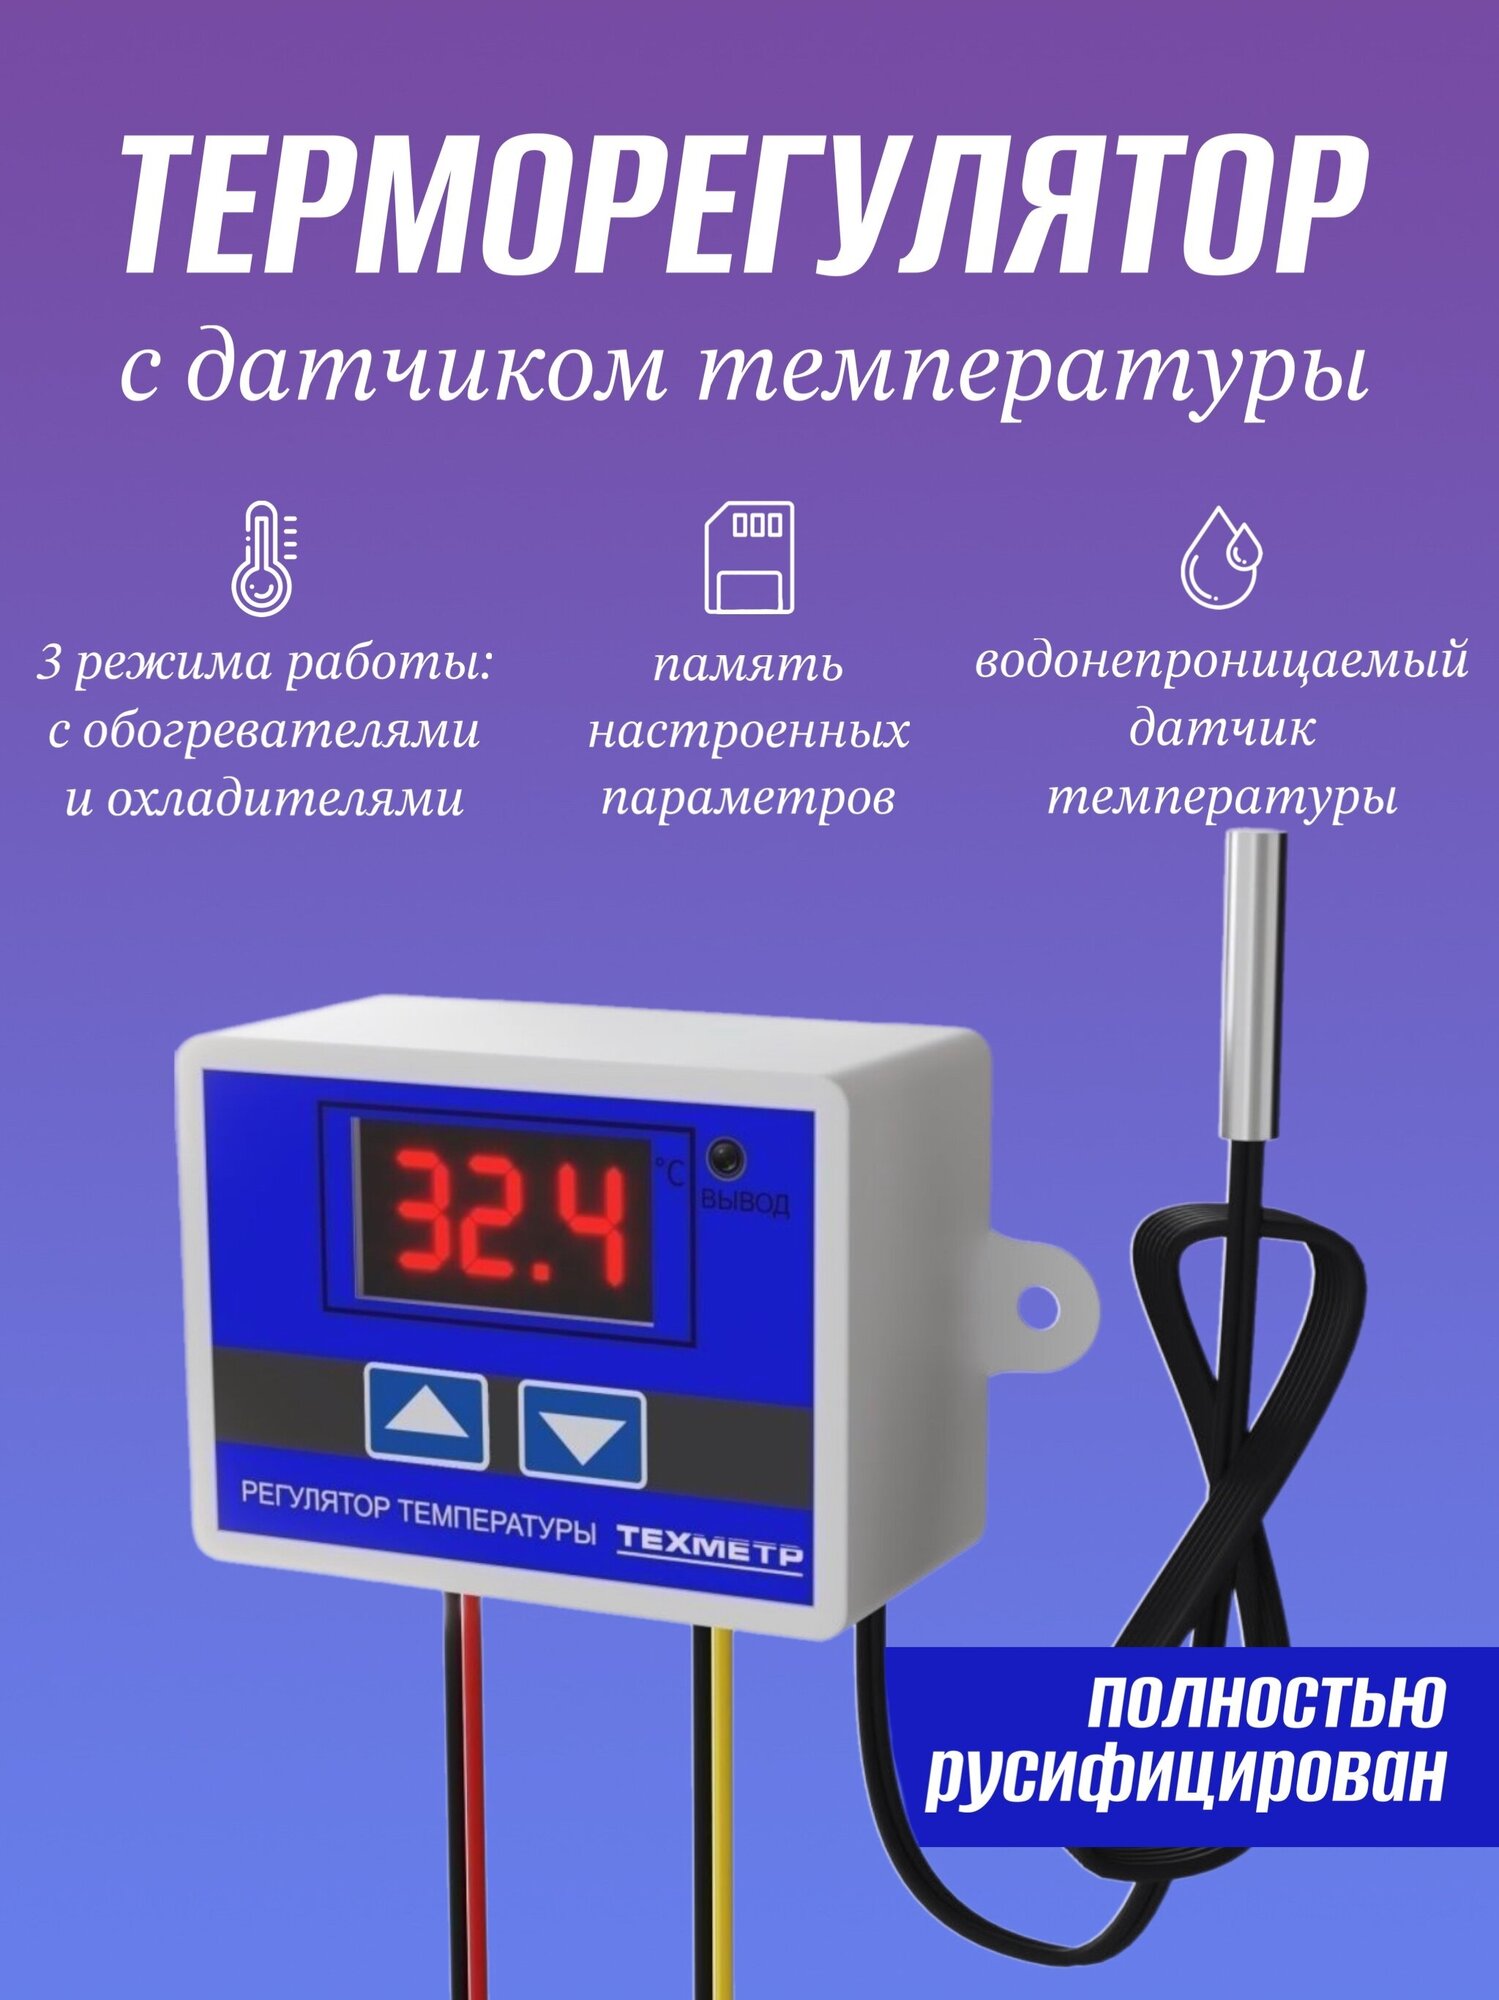 Терморегулятор термостат контроллер температуры с соединительными клеммами (4 штуки) техметр XH-W3001 110-220В 1500Вт -50+110С TRW3001 (Синий) - фотография № 2